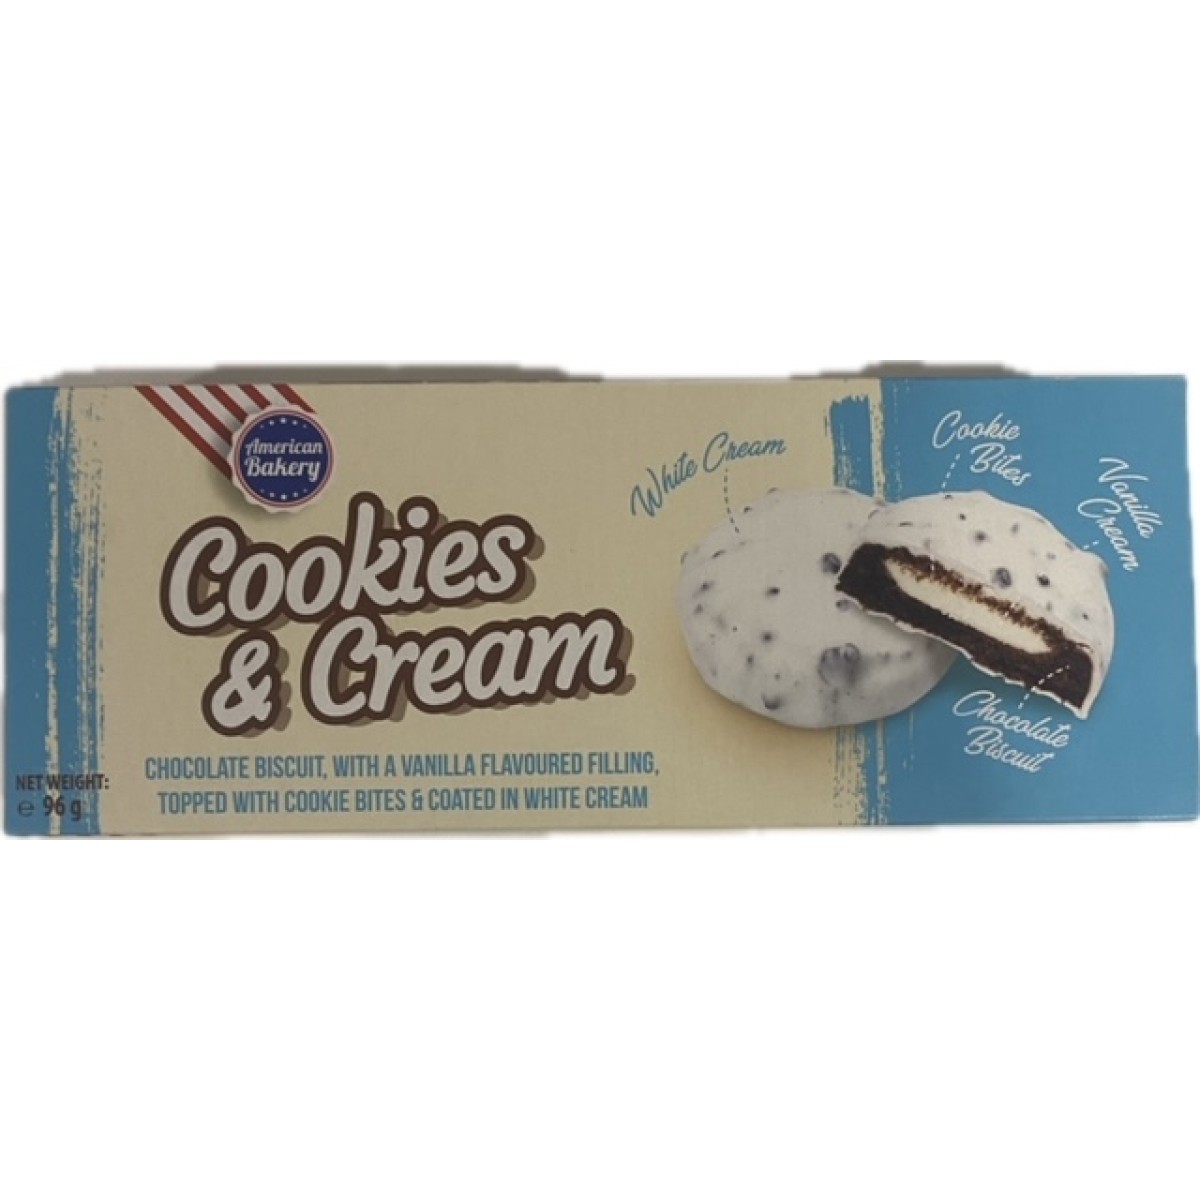 American bakery cookies cream